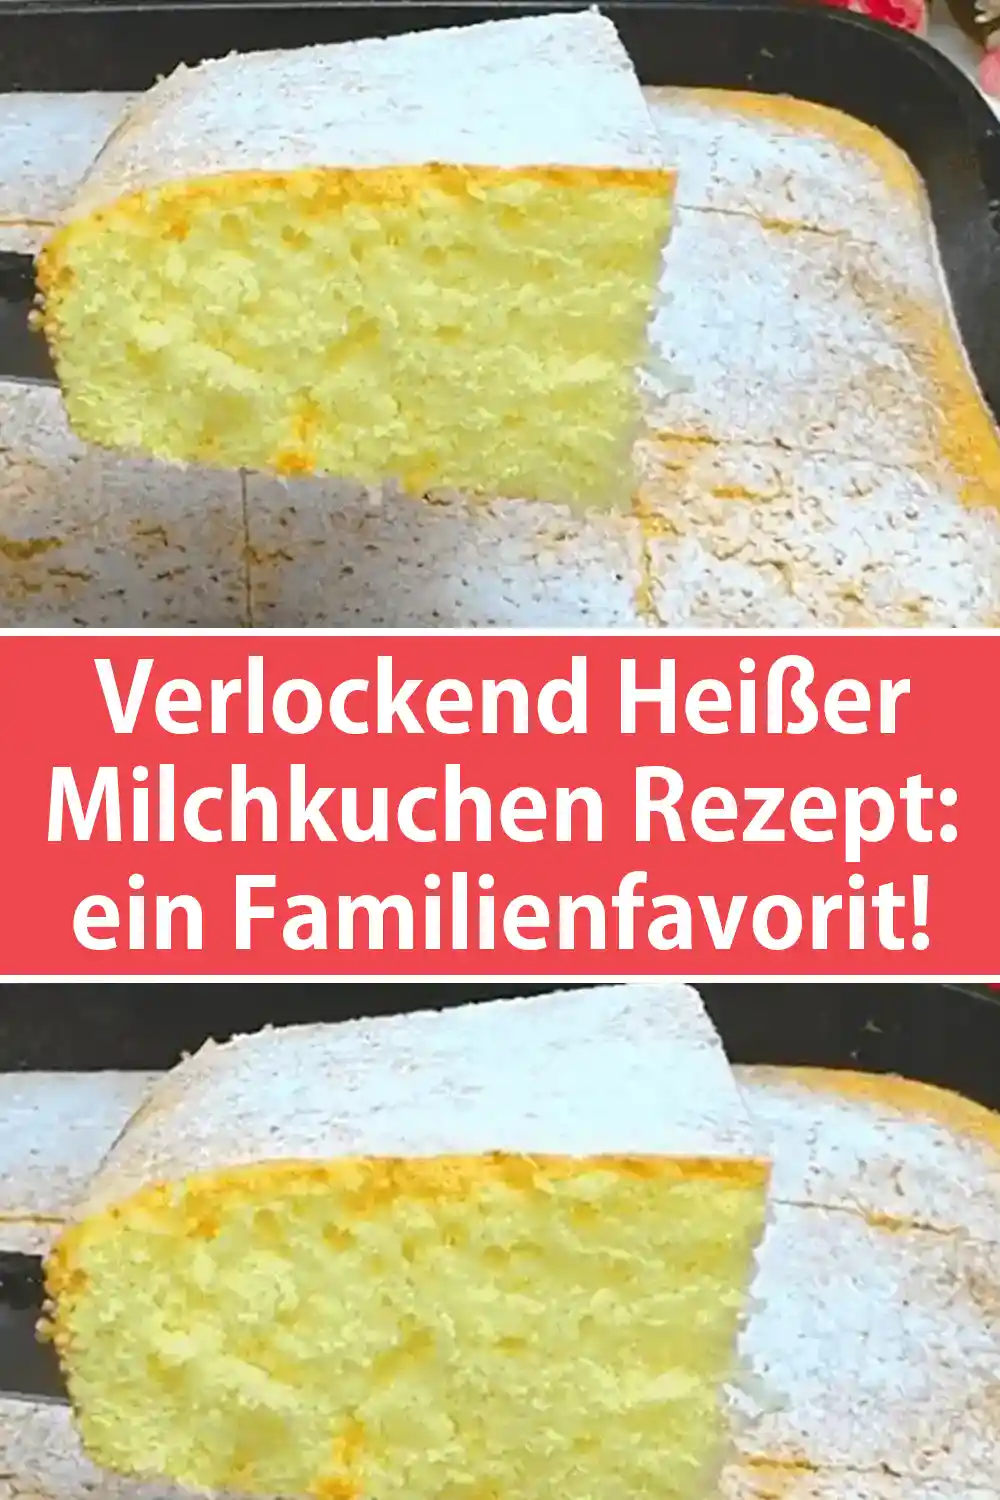 Verlockend Heißer Milchkuchen Rezept: ein Familienfavorit!